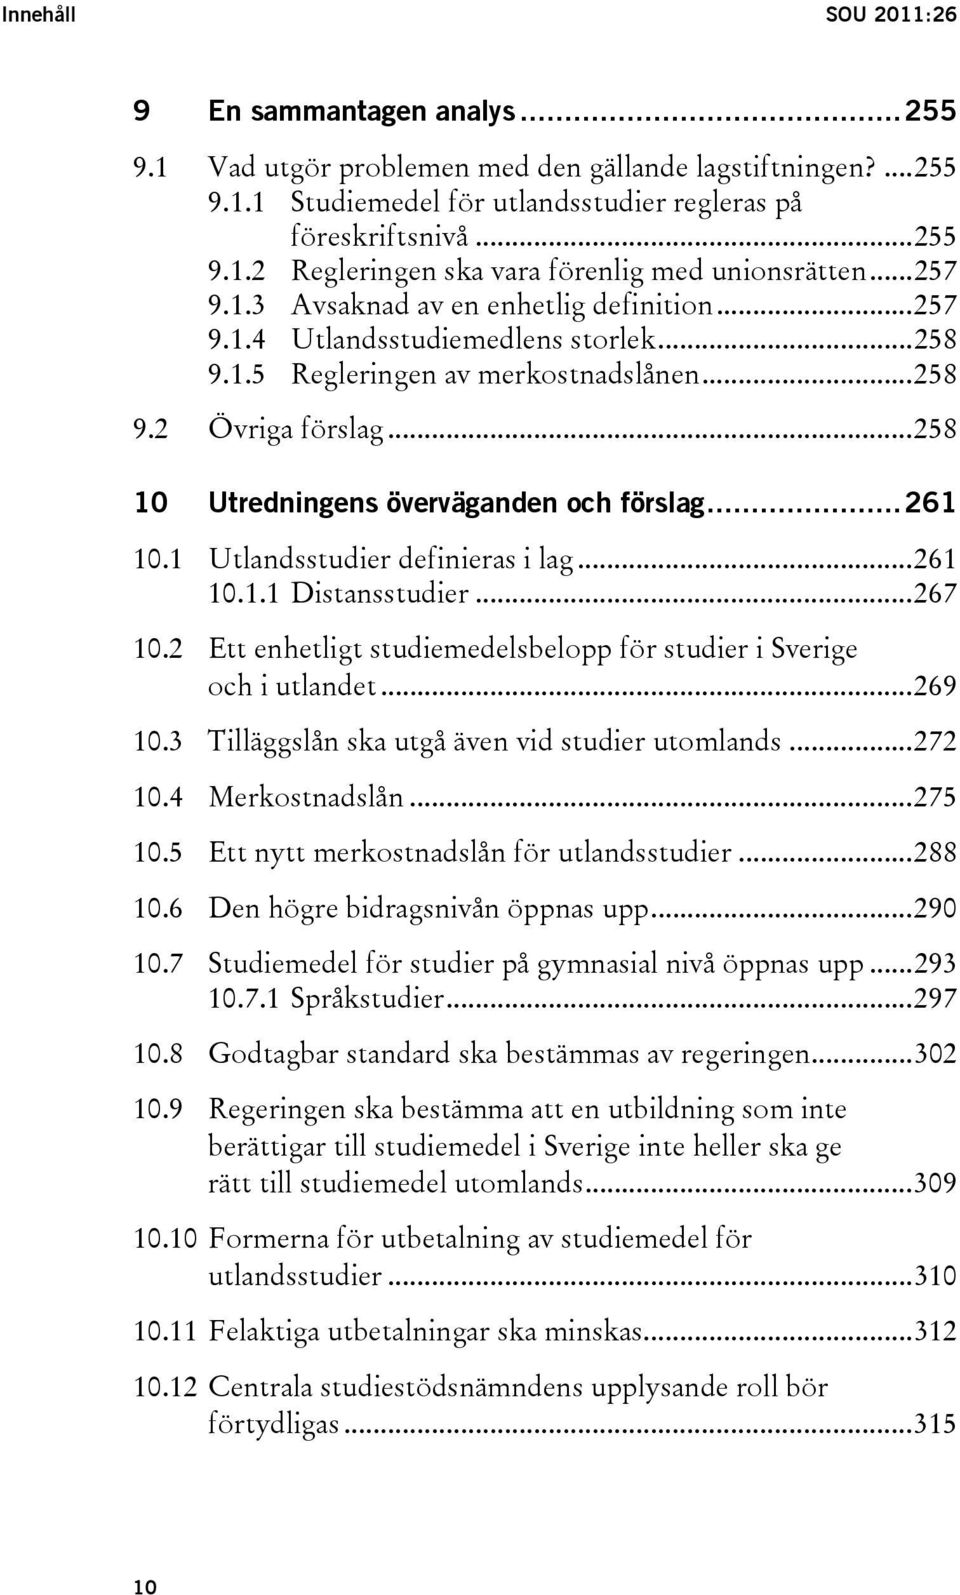 ..258 10 Utredningens överväganden och förslag...261 10.1 Utlandsstudier definieras i lag...261 10.1.1 Distansstudier...267 10.2 Ett enhetligt studiemedelsbelopp för studier i Sverige och i utlandet.